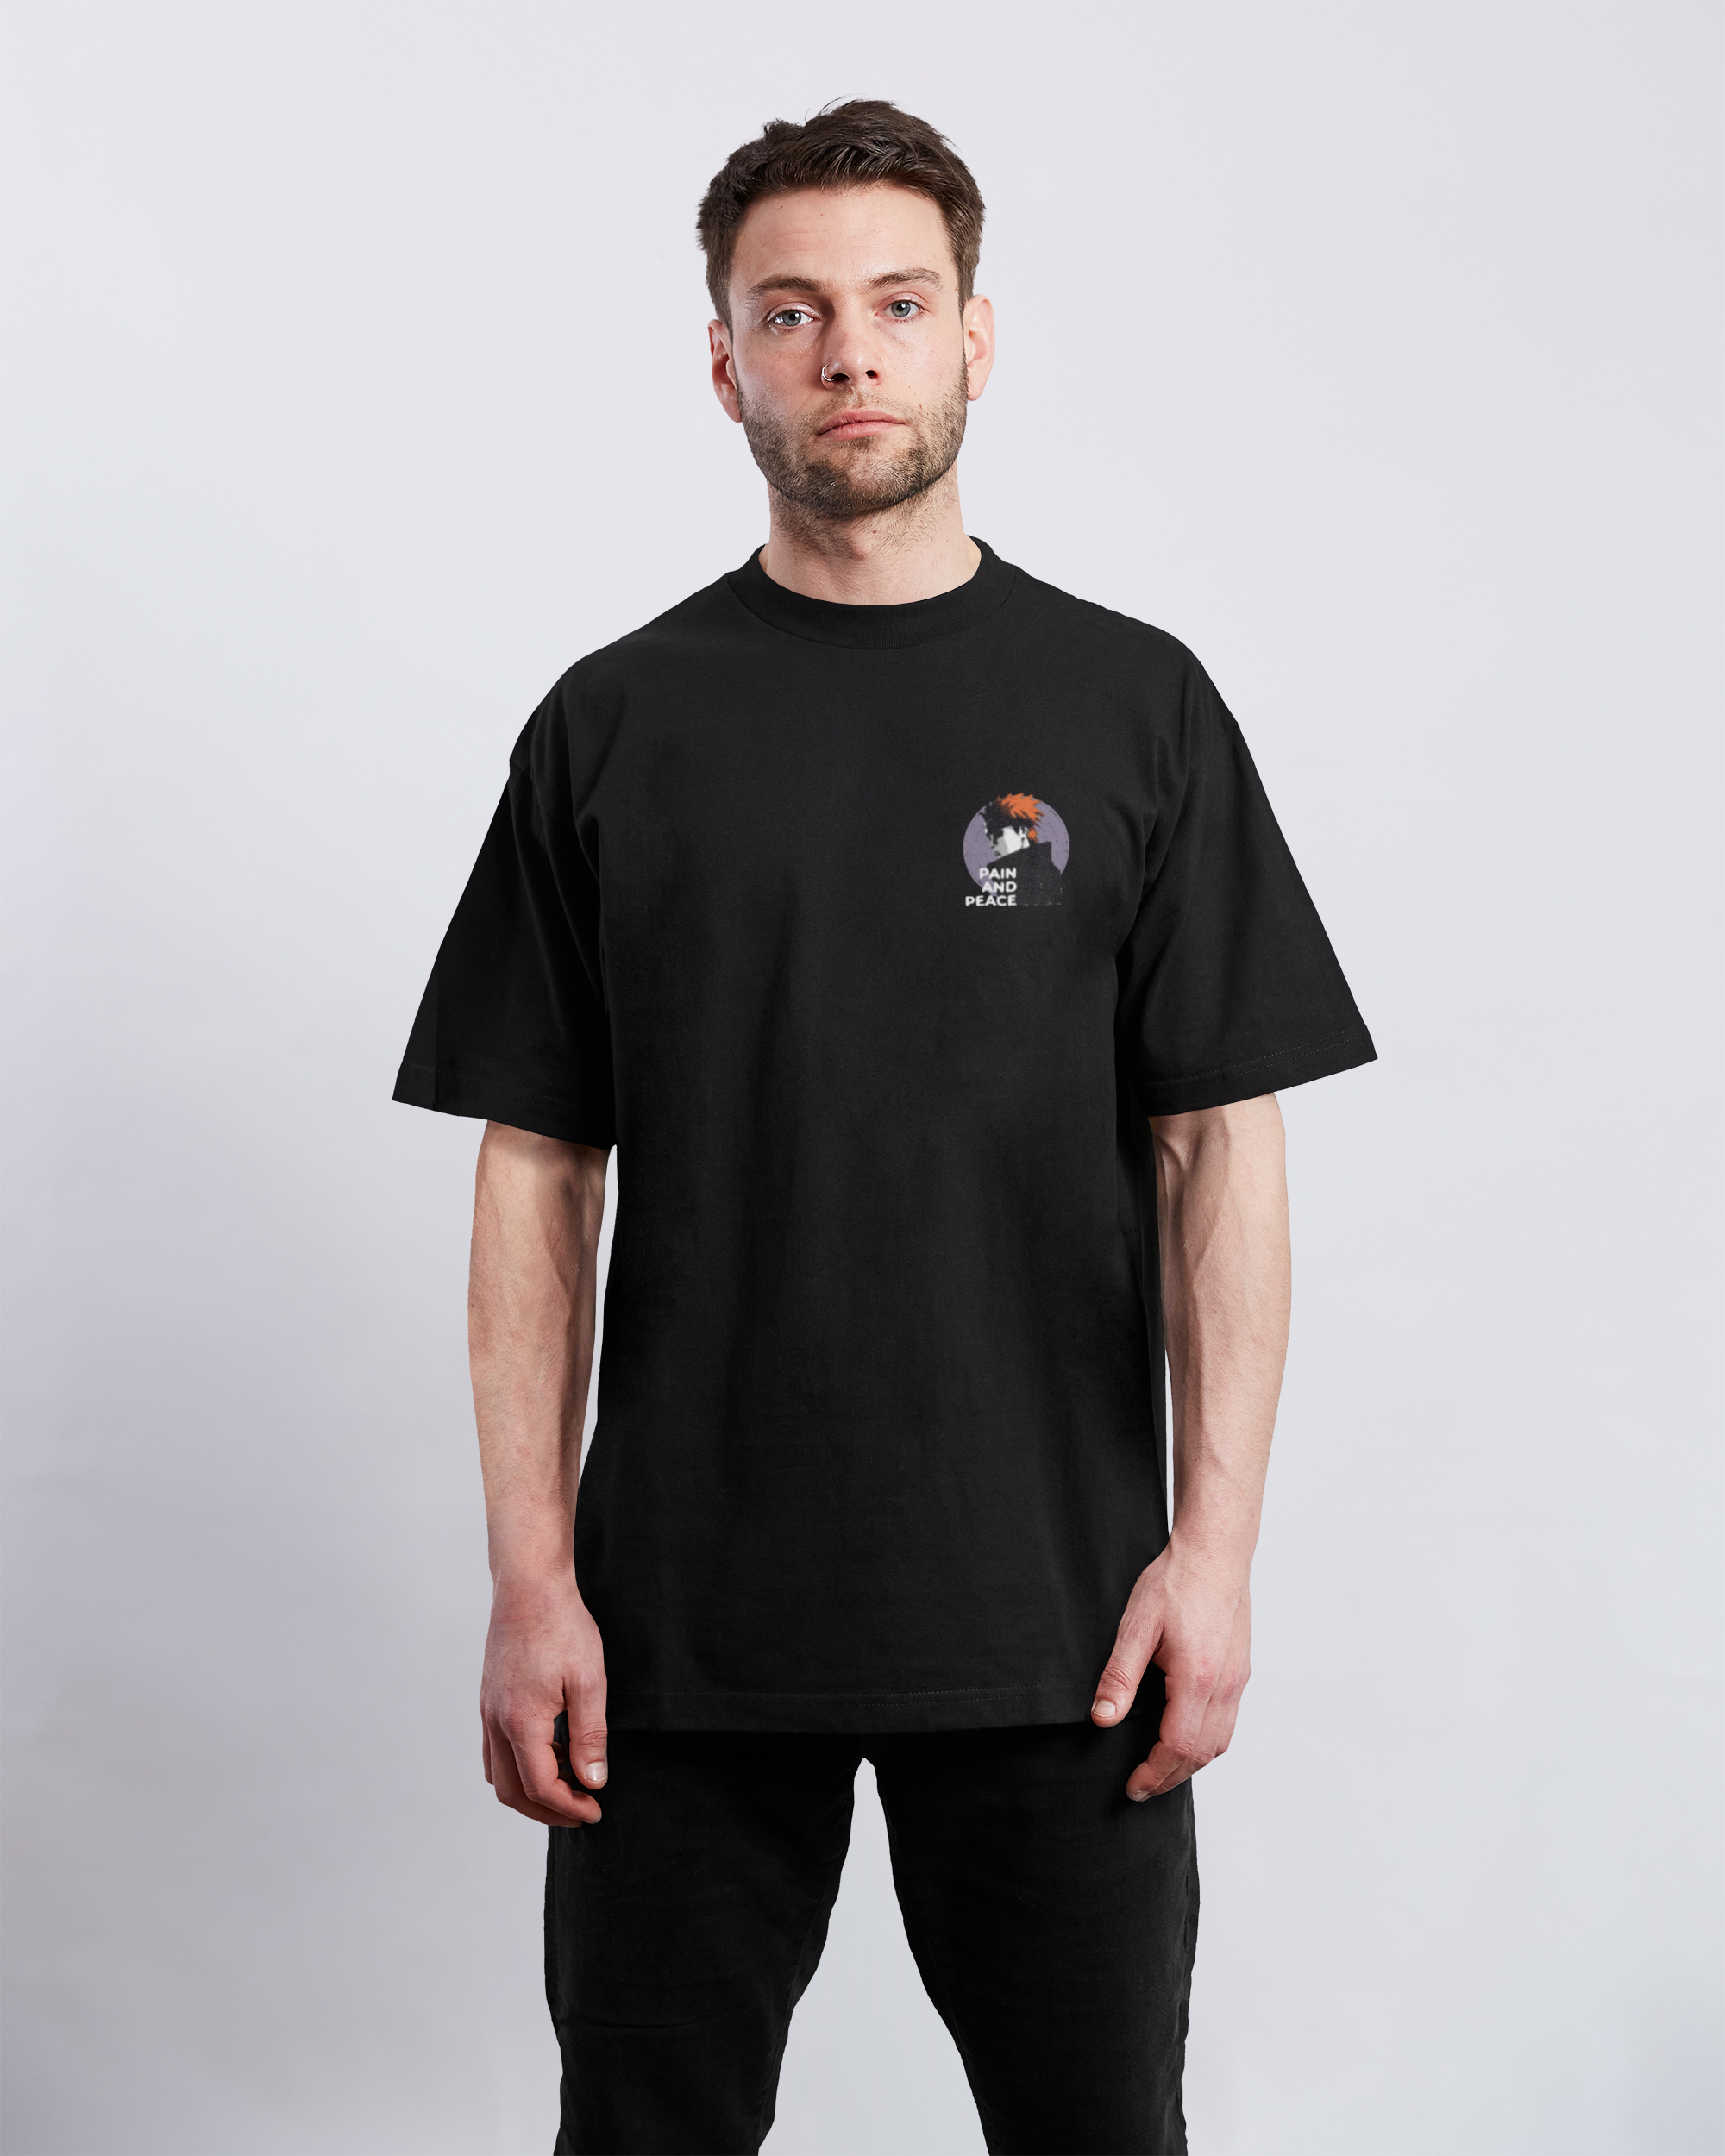 Akatsuki Pain "Peace" T-Shirt | Naruto Shippuden